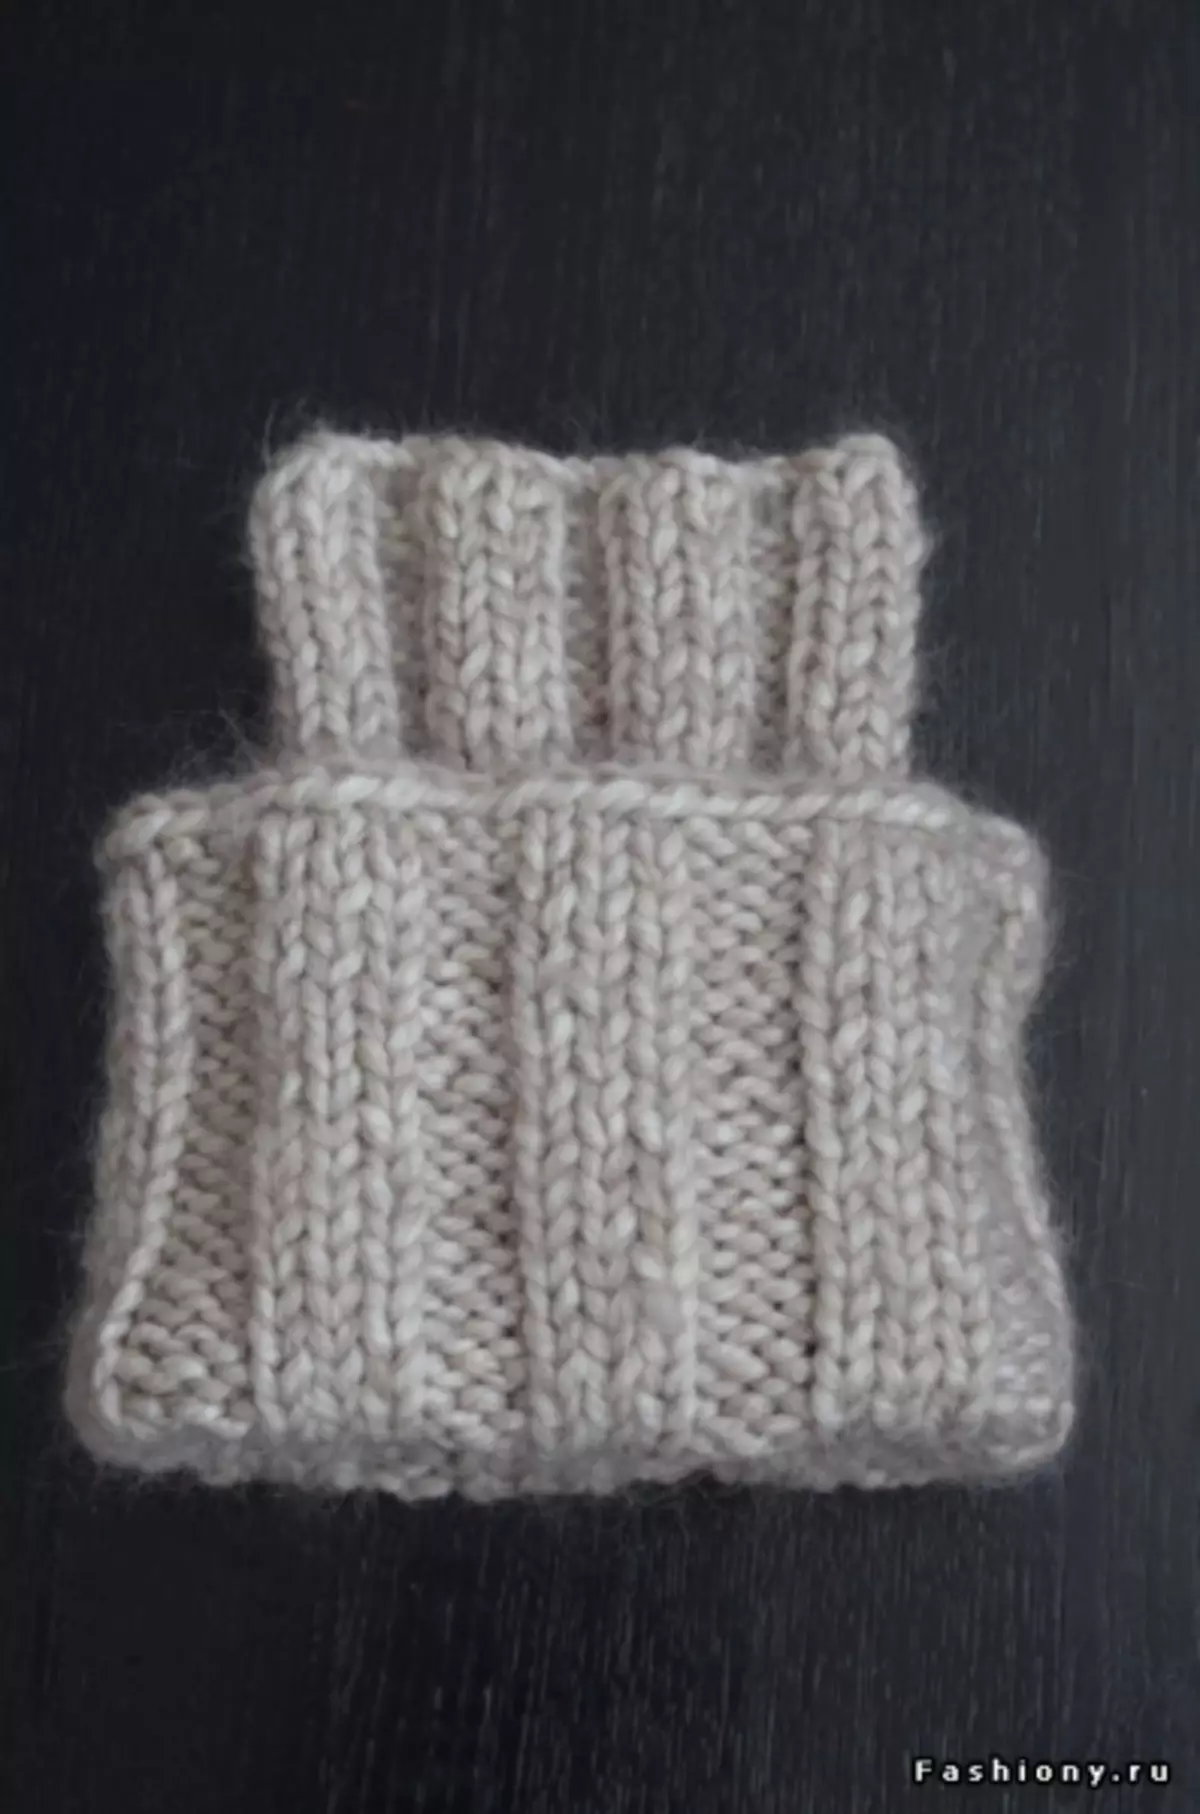 VolumeTryske CAP-stricken foar froulju mei beskriuwing en fideo